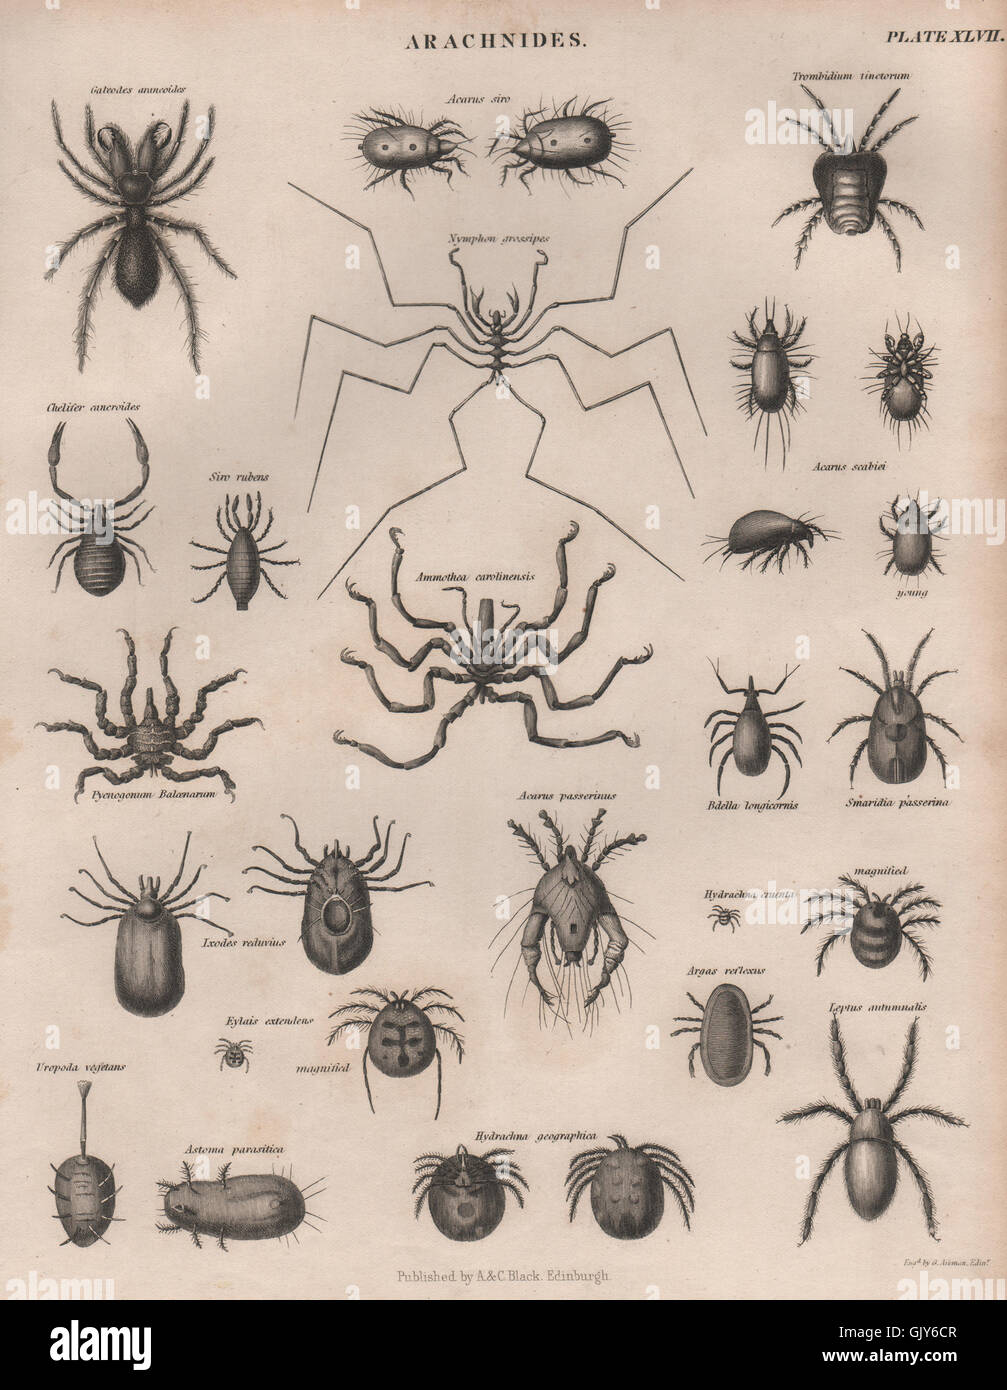 SPIDERS Arachnids. 2. BRITANNICA, antique print 1860 Stock Photo